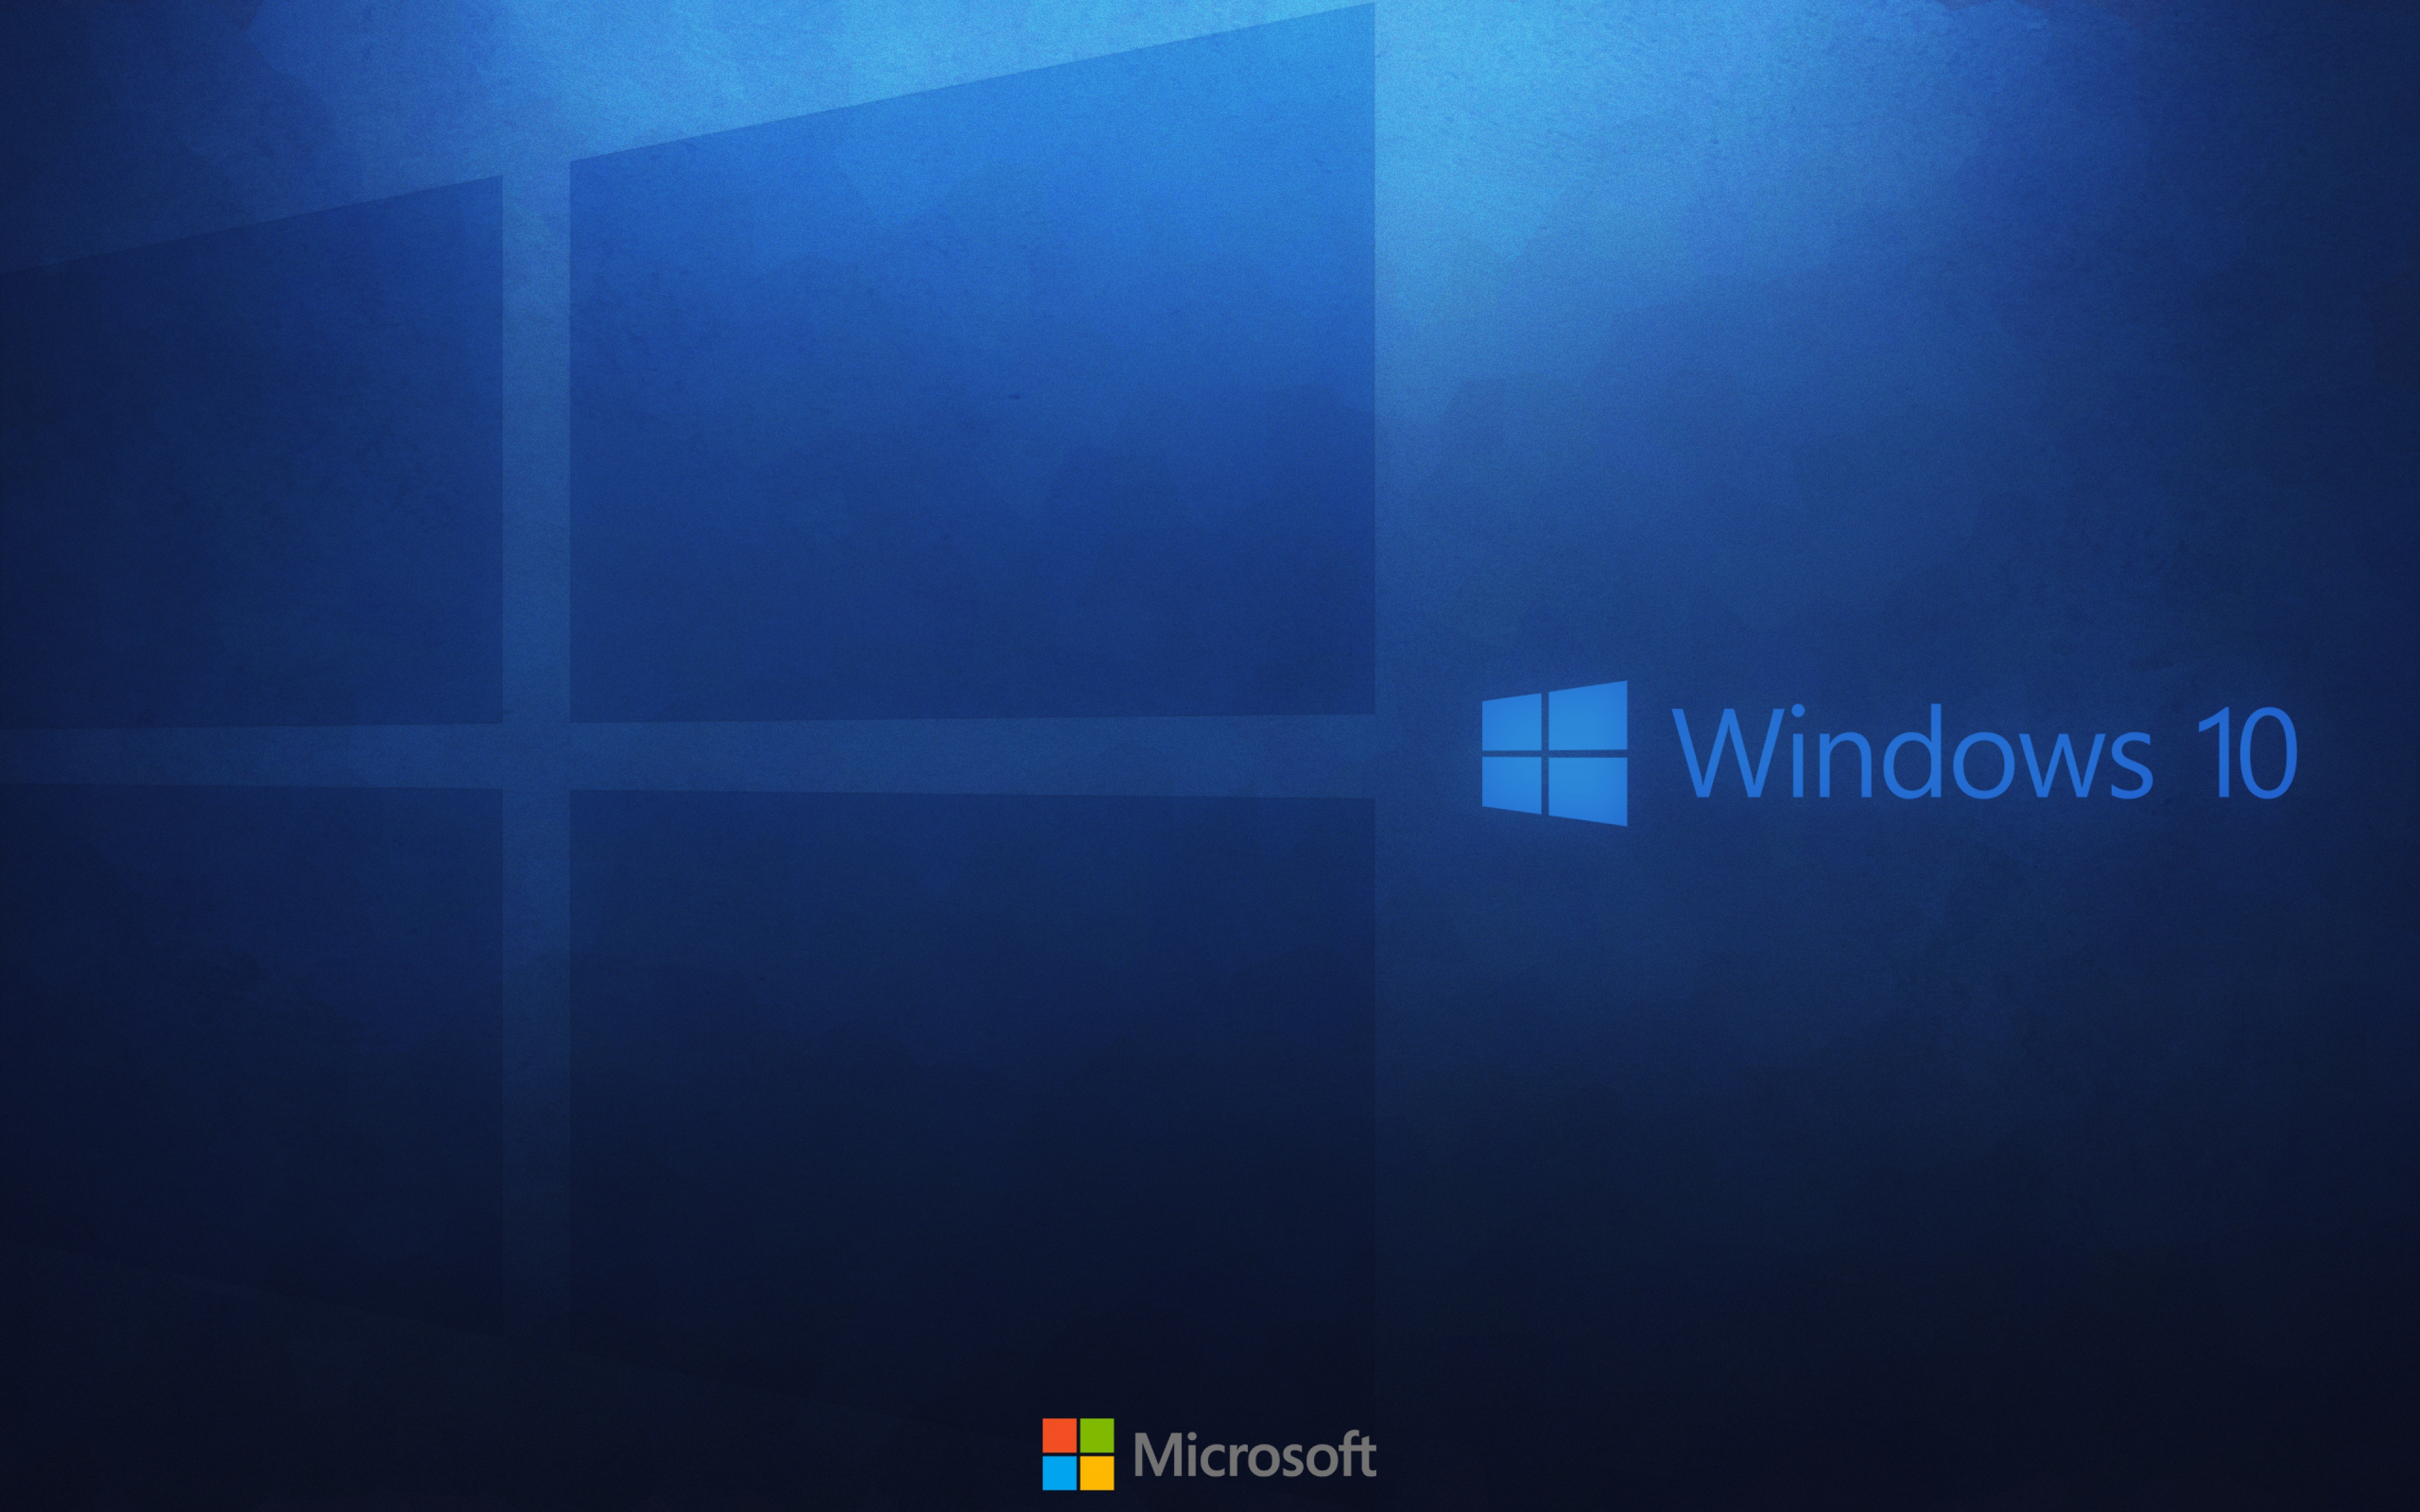 HD Background Windows 10 Wallpaper: Hình nền HD chất lượng cao sẽ mang đến cho bạn một cái nhìn mới mẻ và sống động hơn cho chiếc máy tính của mình. Hãy xem các bức ảnh HD Background Windows 10 Wallpaper để thưởng thức thiên nhiên, động vật hoặc cảnh quan đầy màu sắc.